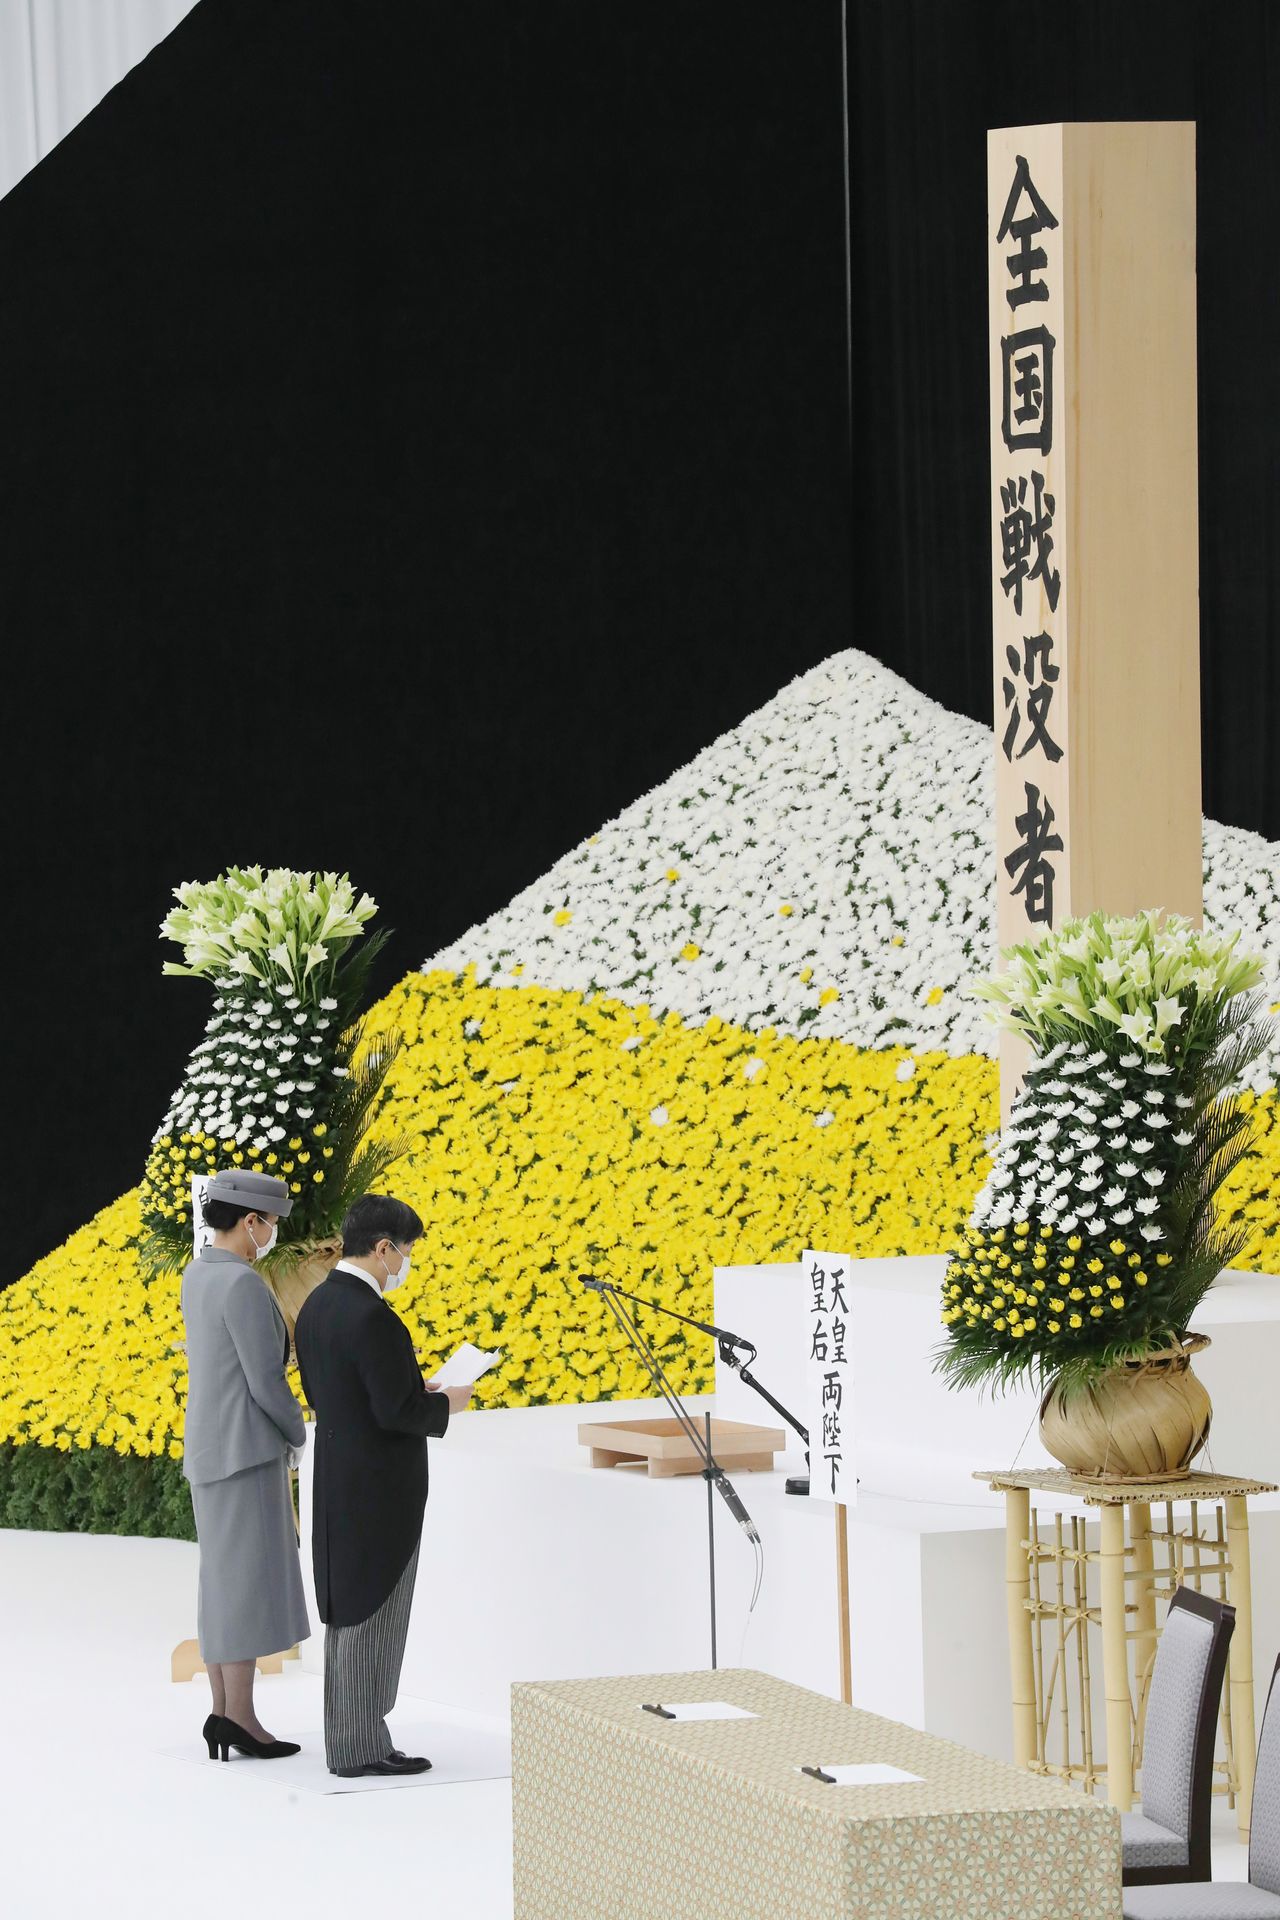 l'empereur Naruhito présentant son discours lors de la cérémonie d'hommage aux victimes de la Seconde Guerre mondiale.